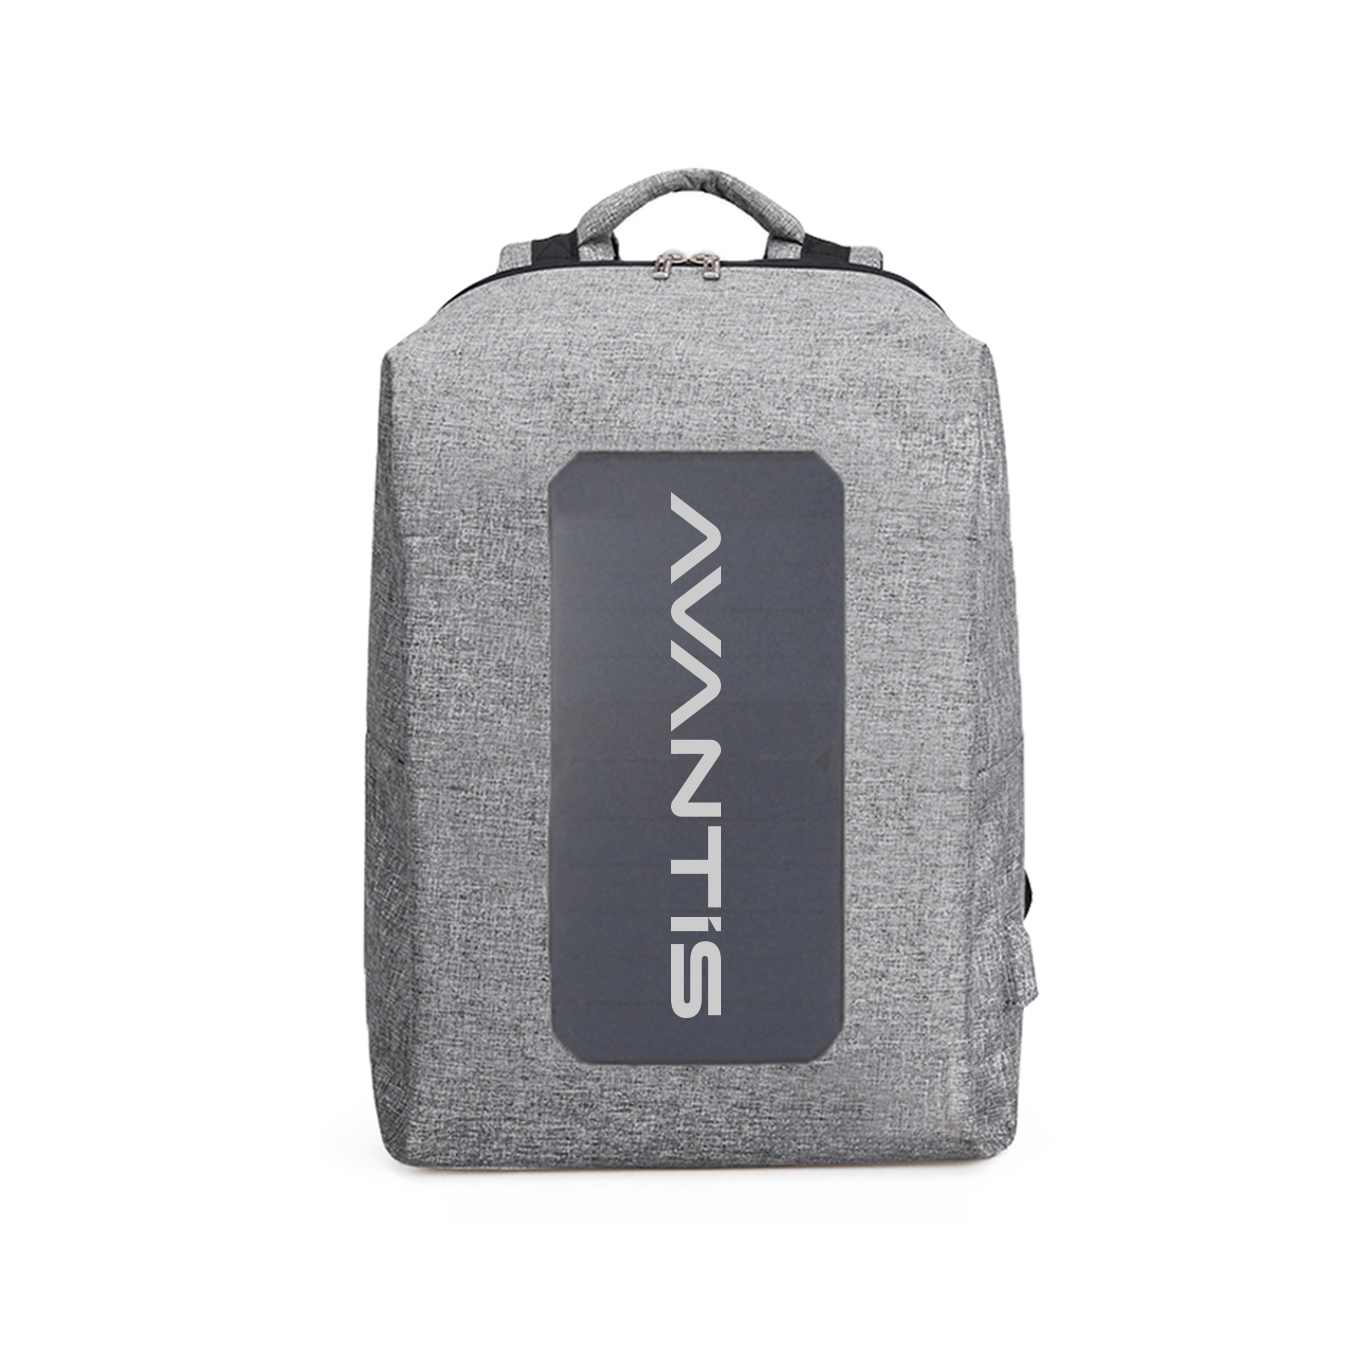 Avantis Ultra Slim Laptop Backpack 17.3 Inch | Avantis Technologies